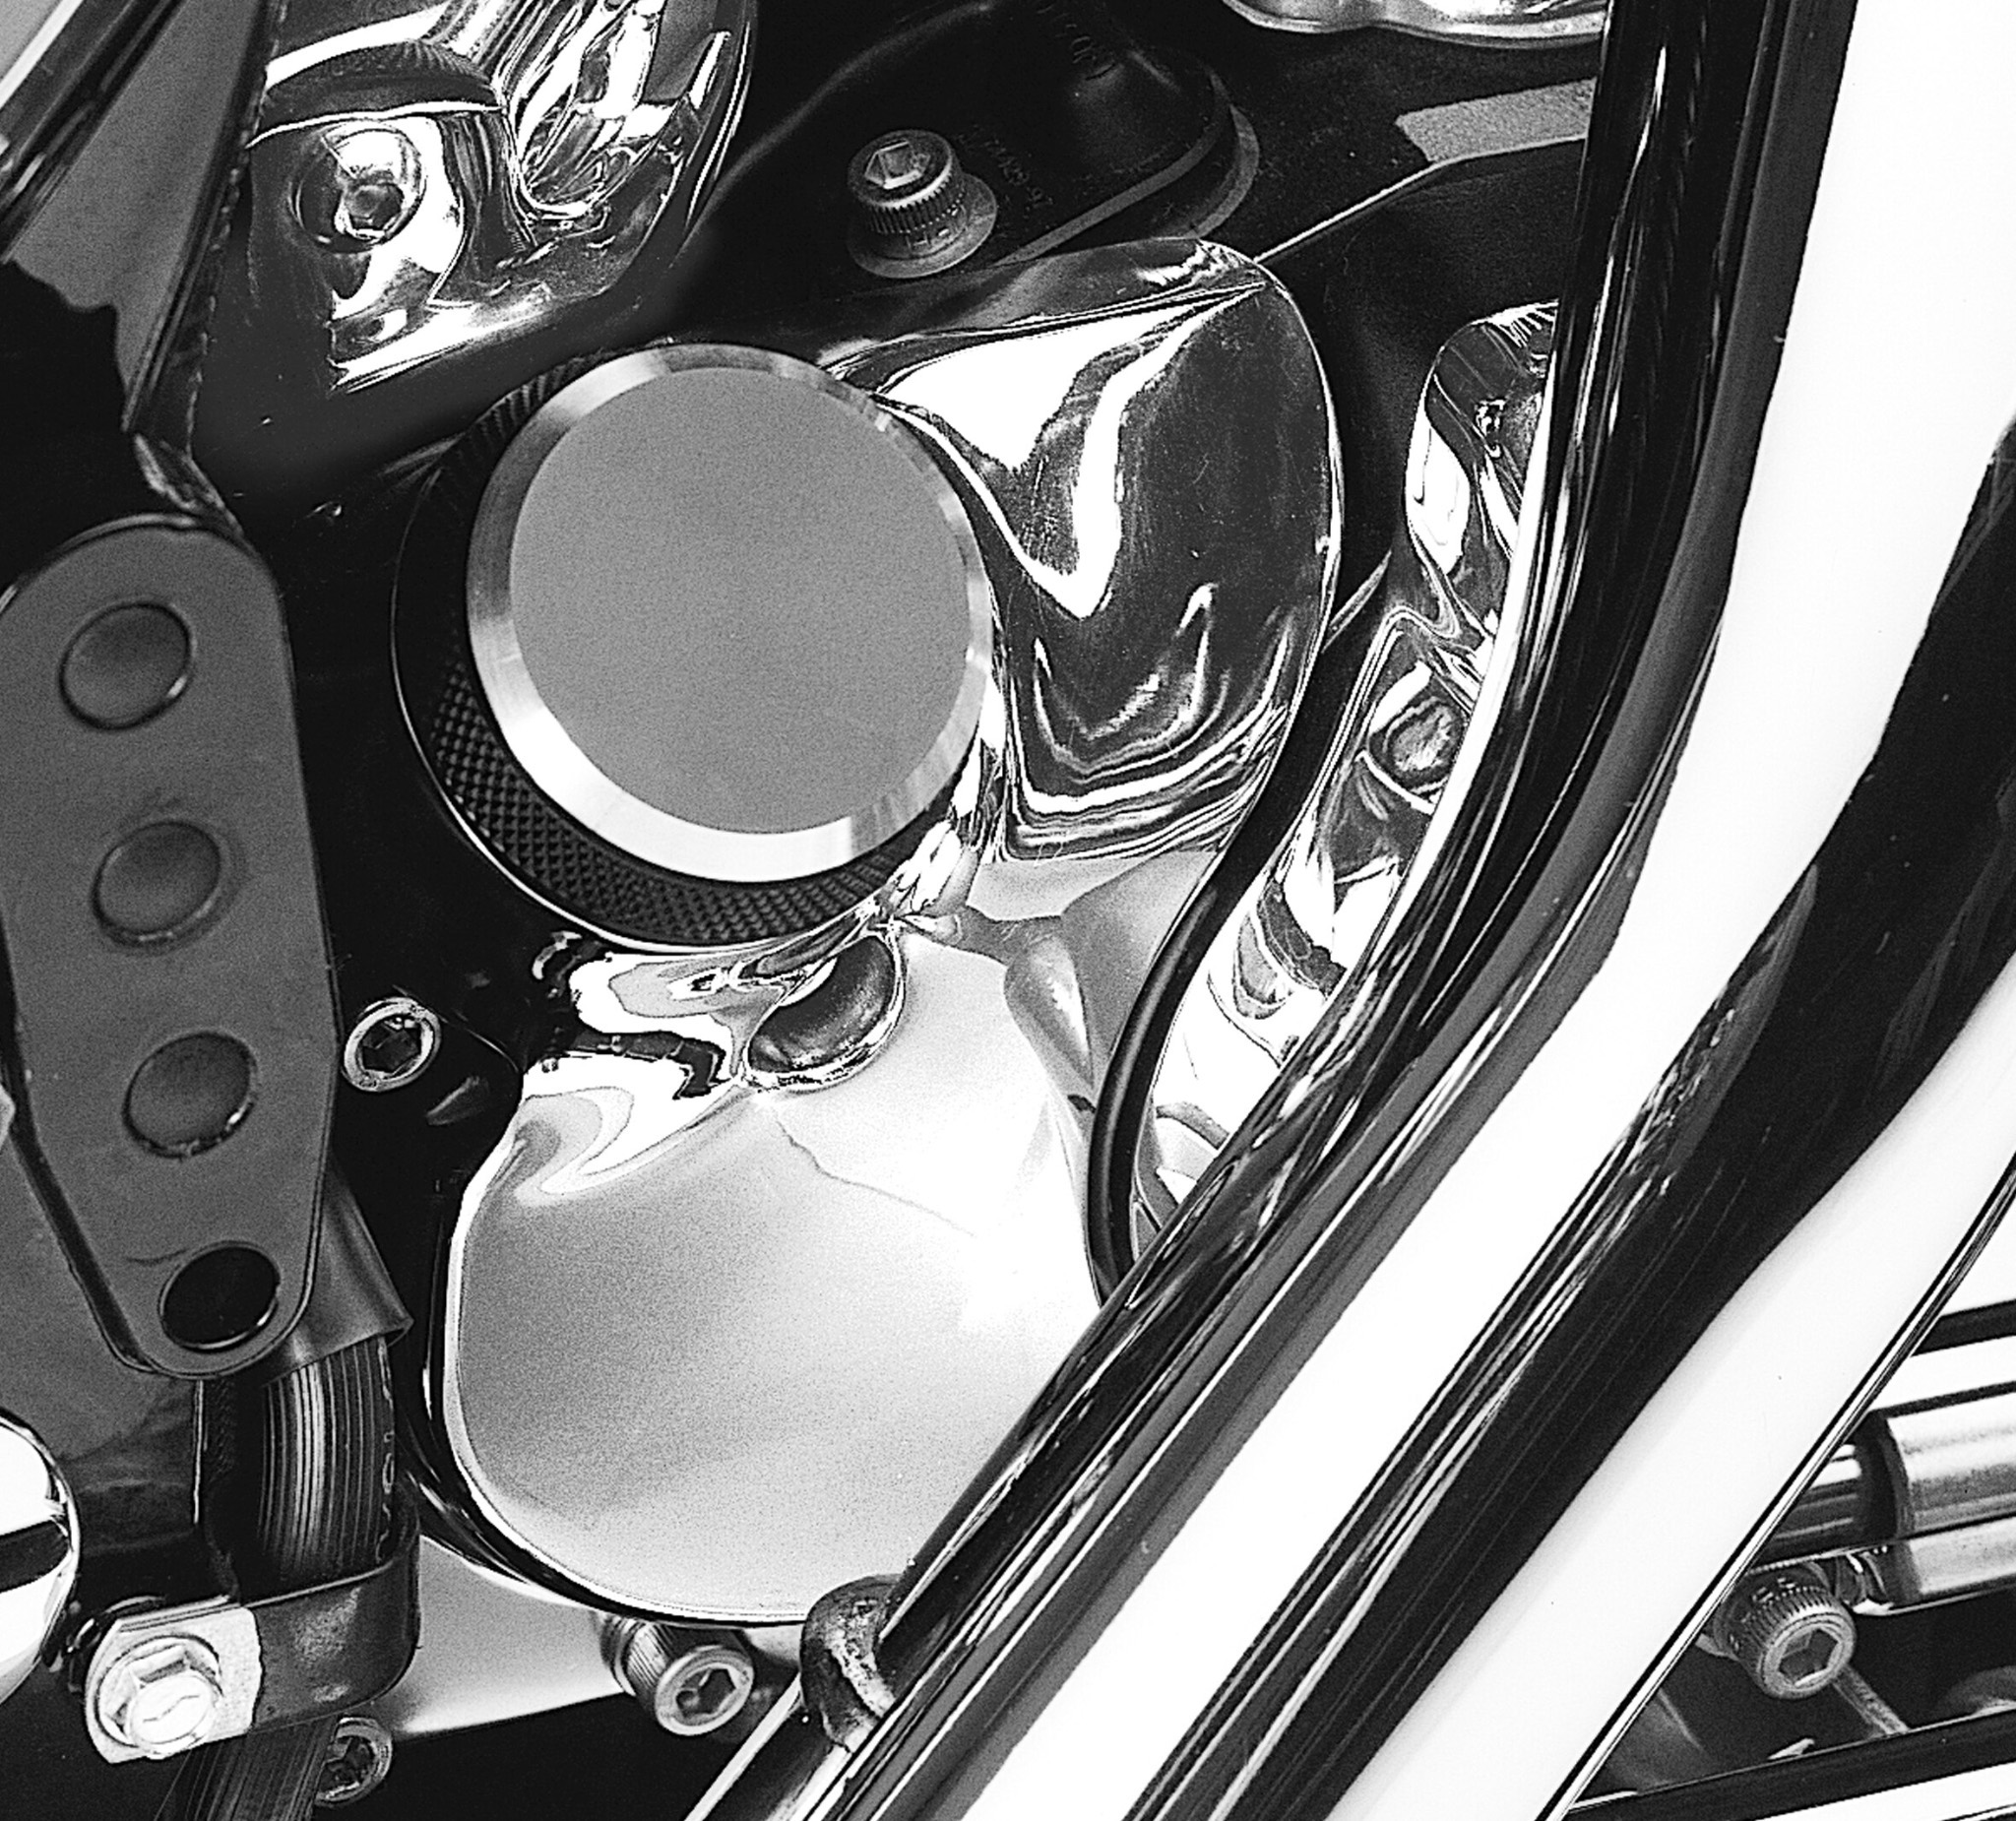 Kuryakyn Oil Filler Spout Cover Chrome #8264 For Harley Davidson 